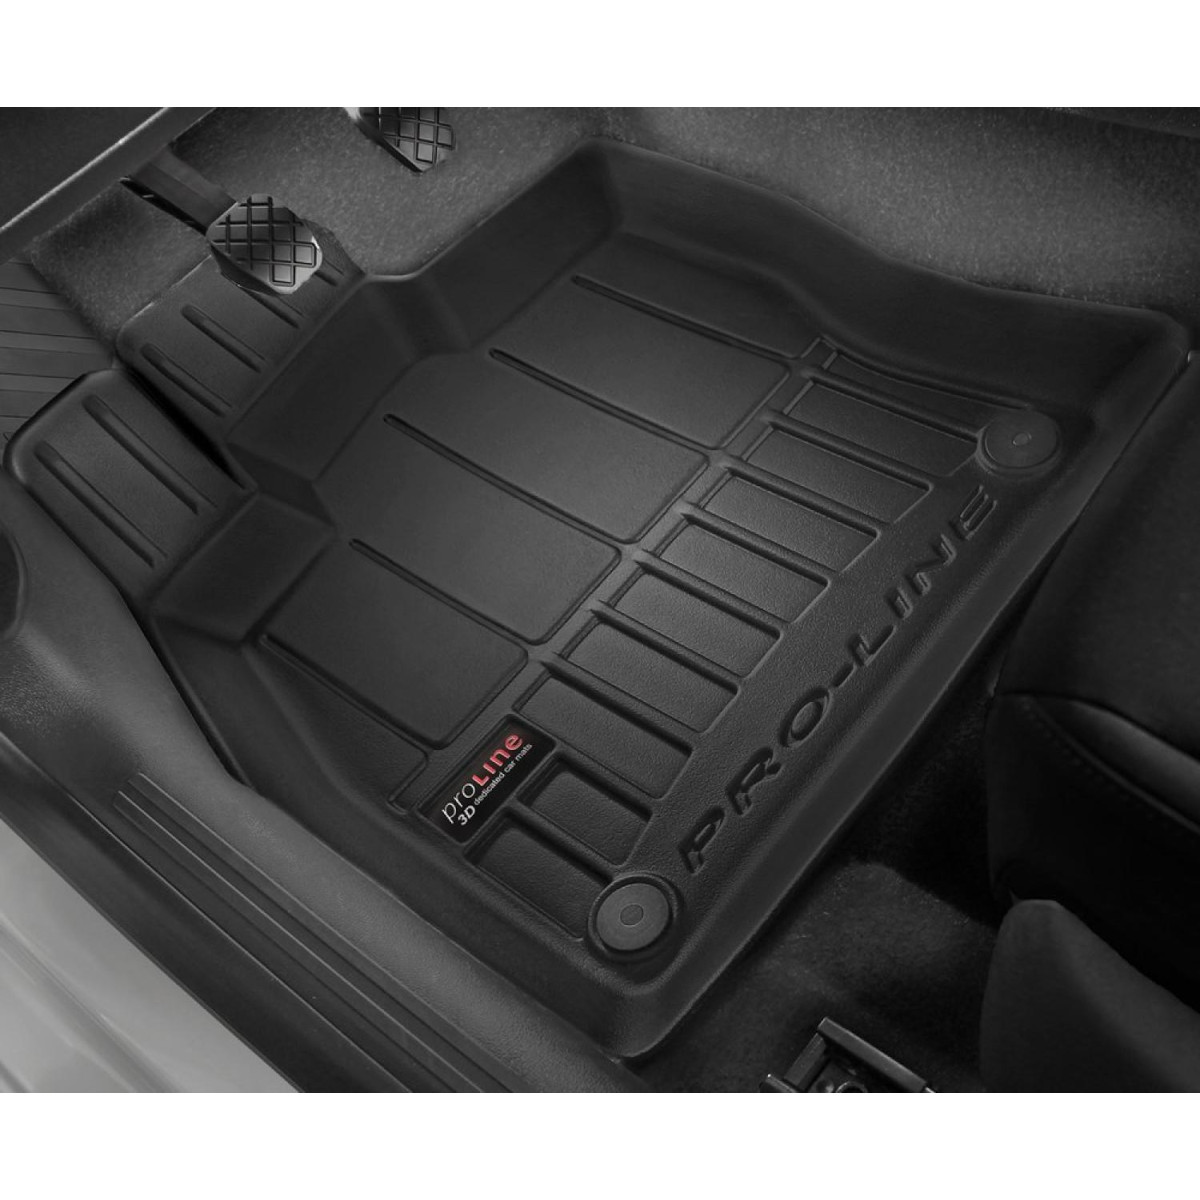 Guminiai kilimėliai Proline Mazda 3 III 2013-2018m. / paaukštintais kraštais